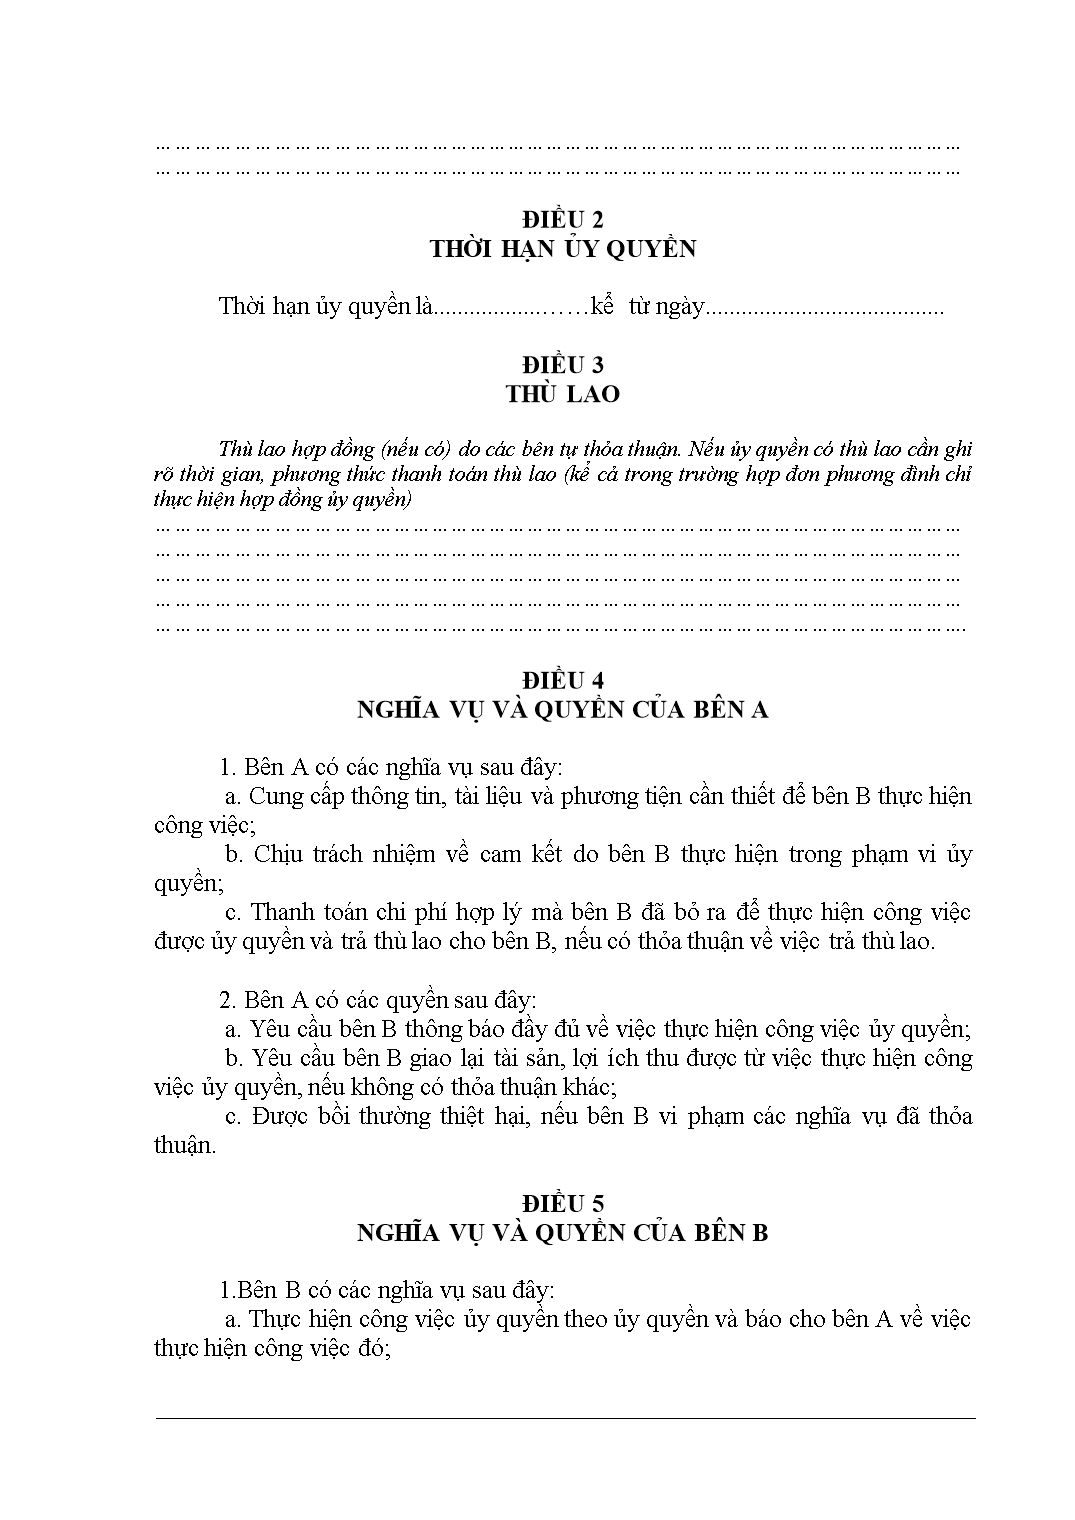 Biểu mẫu tổng hợp các mẫu hợp đồng ủy quyền trang 5